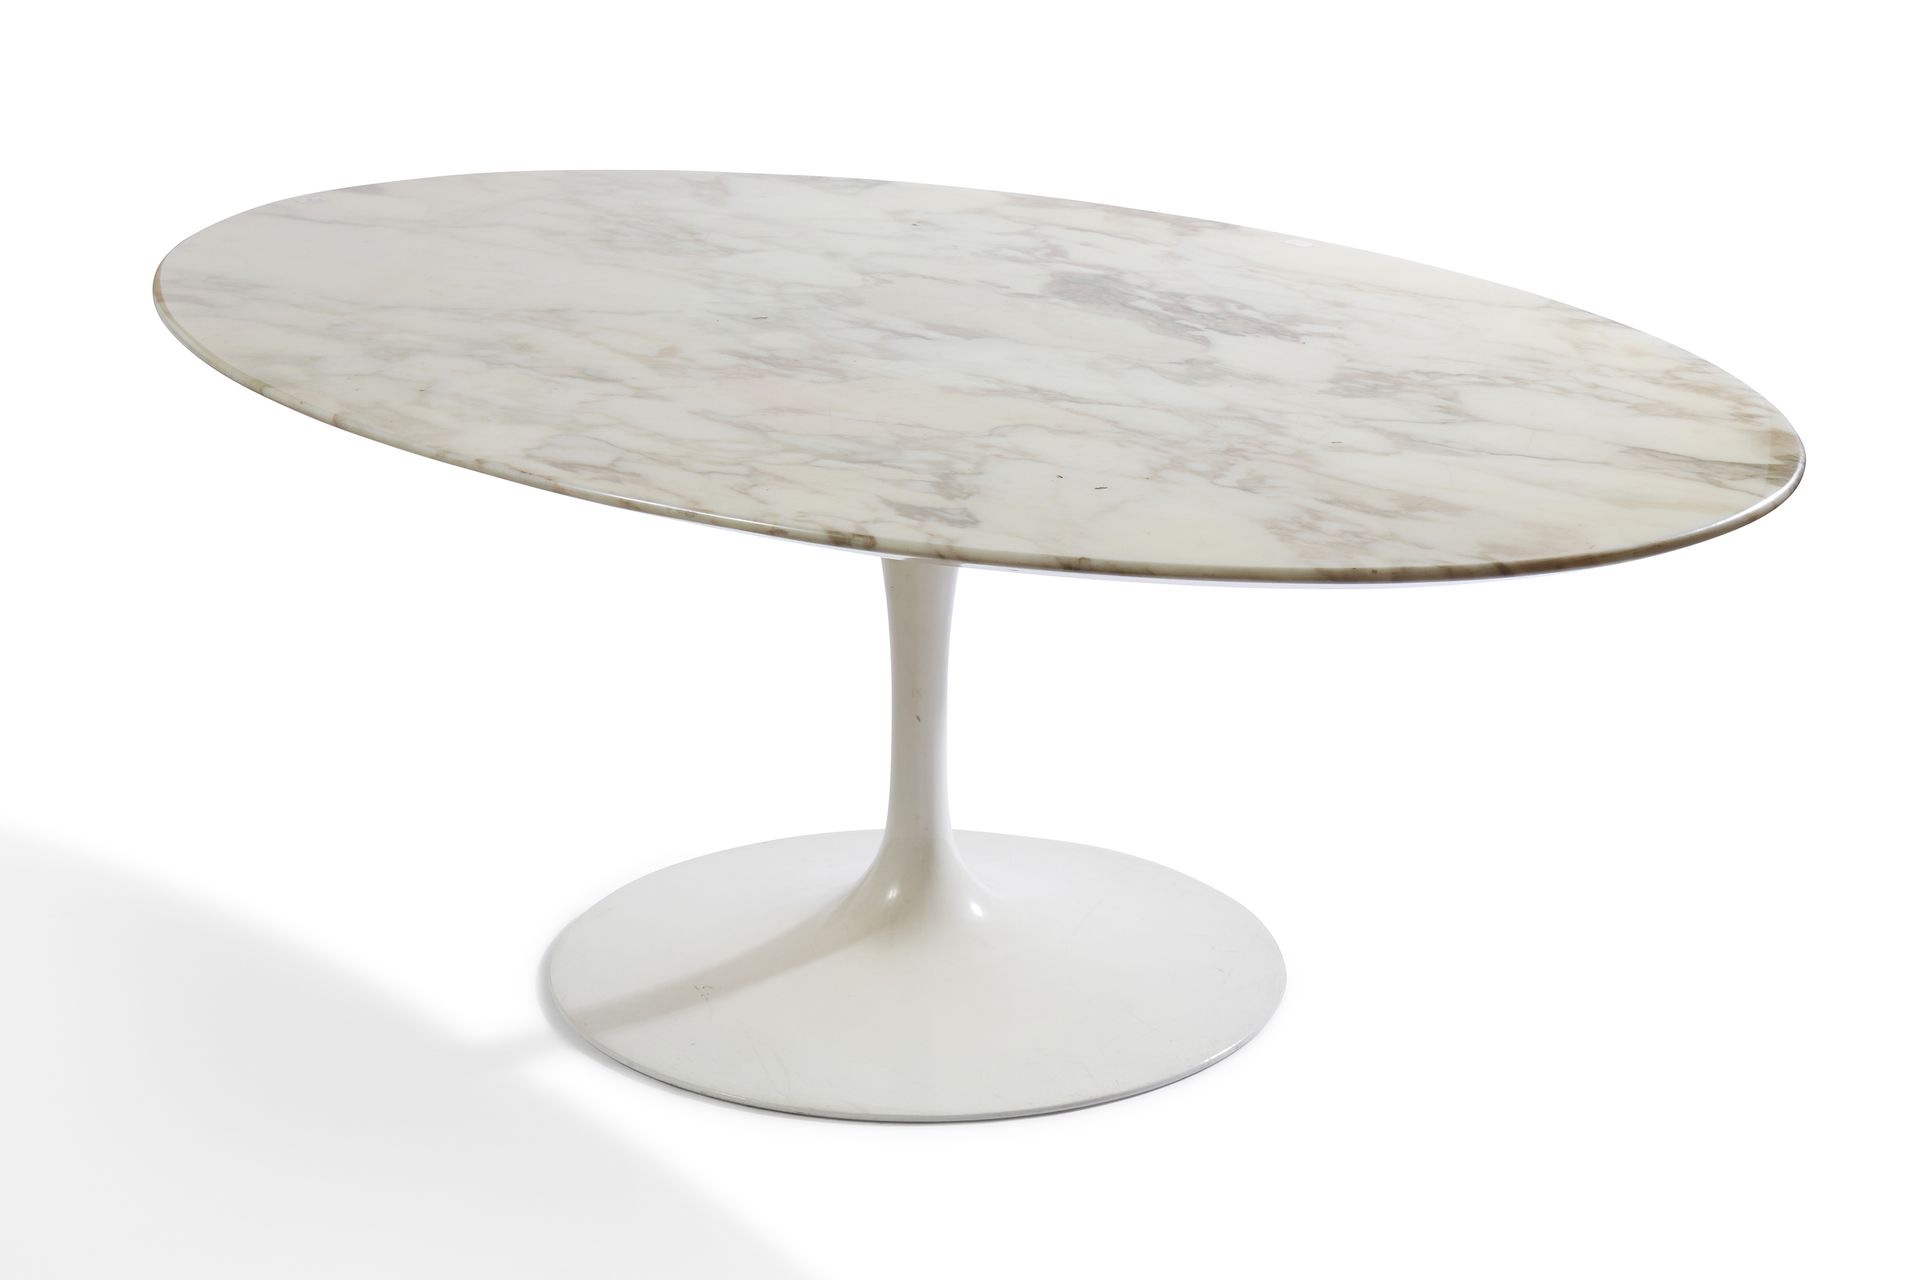 Null Eero SAARINEN KNOLL


郁金香底座和白色大理石椭圆形桌面的咖啡桌


37 x 104 x 70厘米


磨损、划痕和发黄的顶部